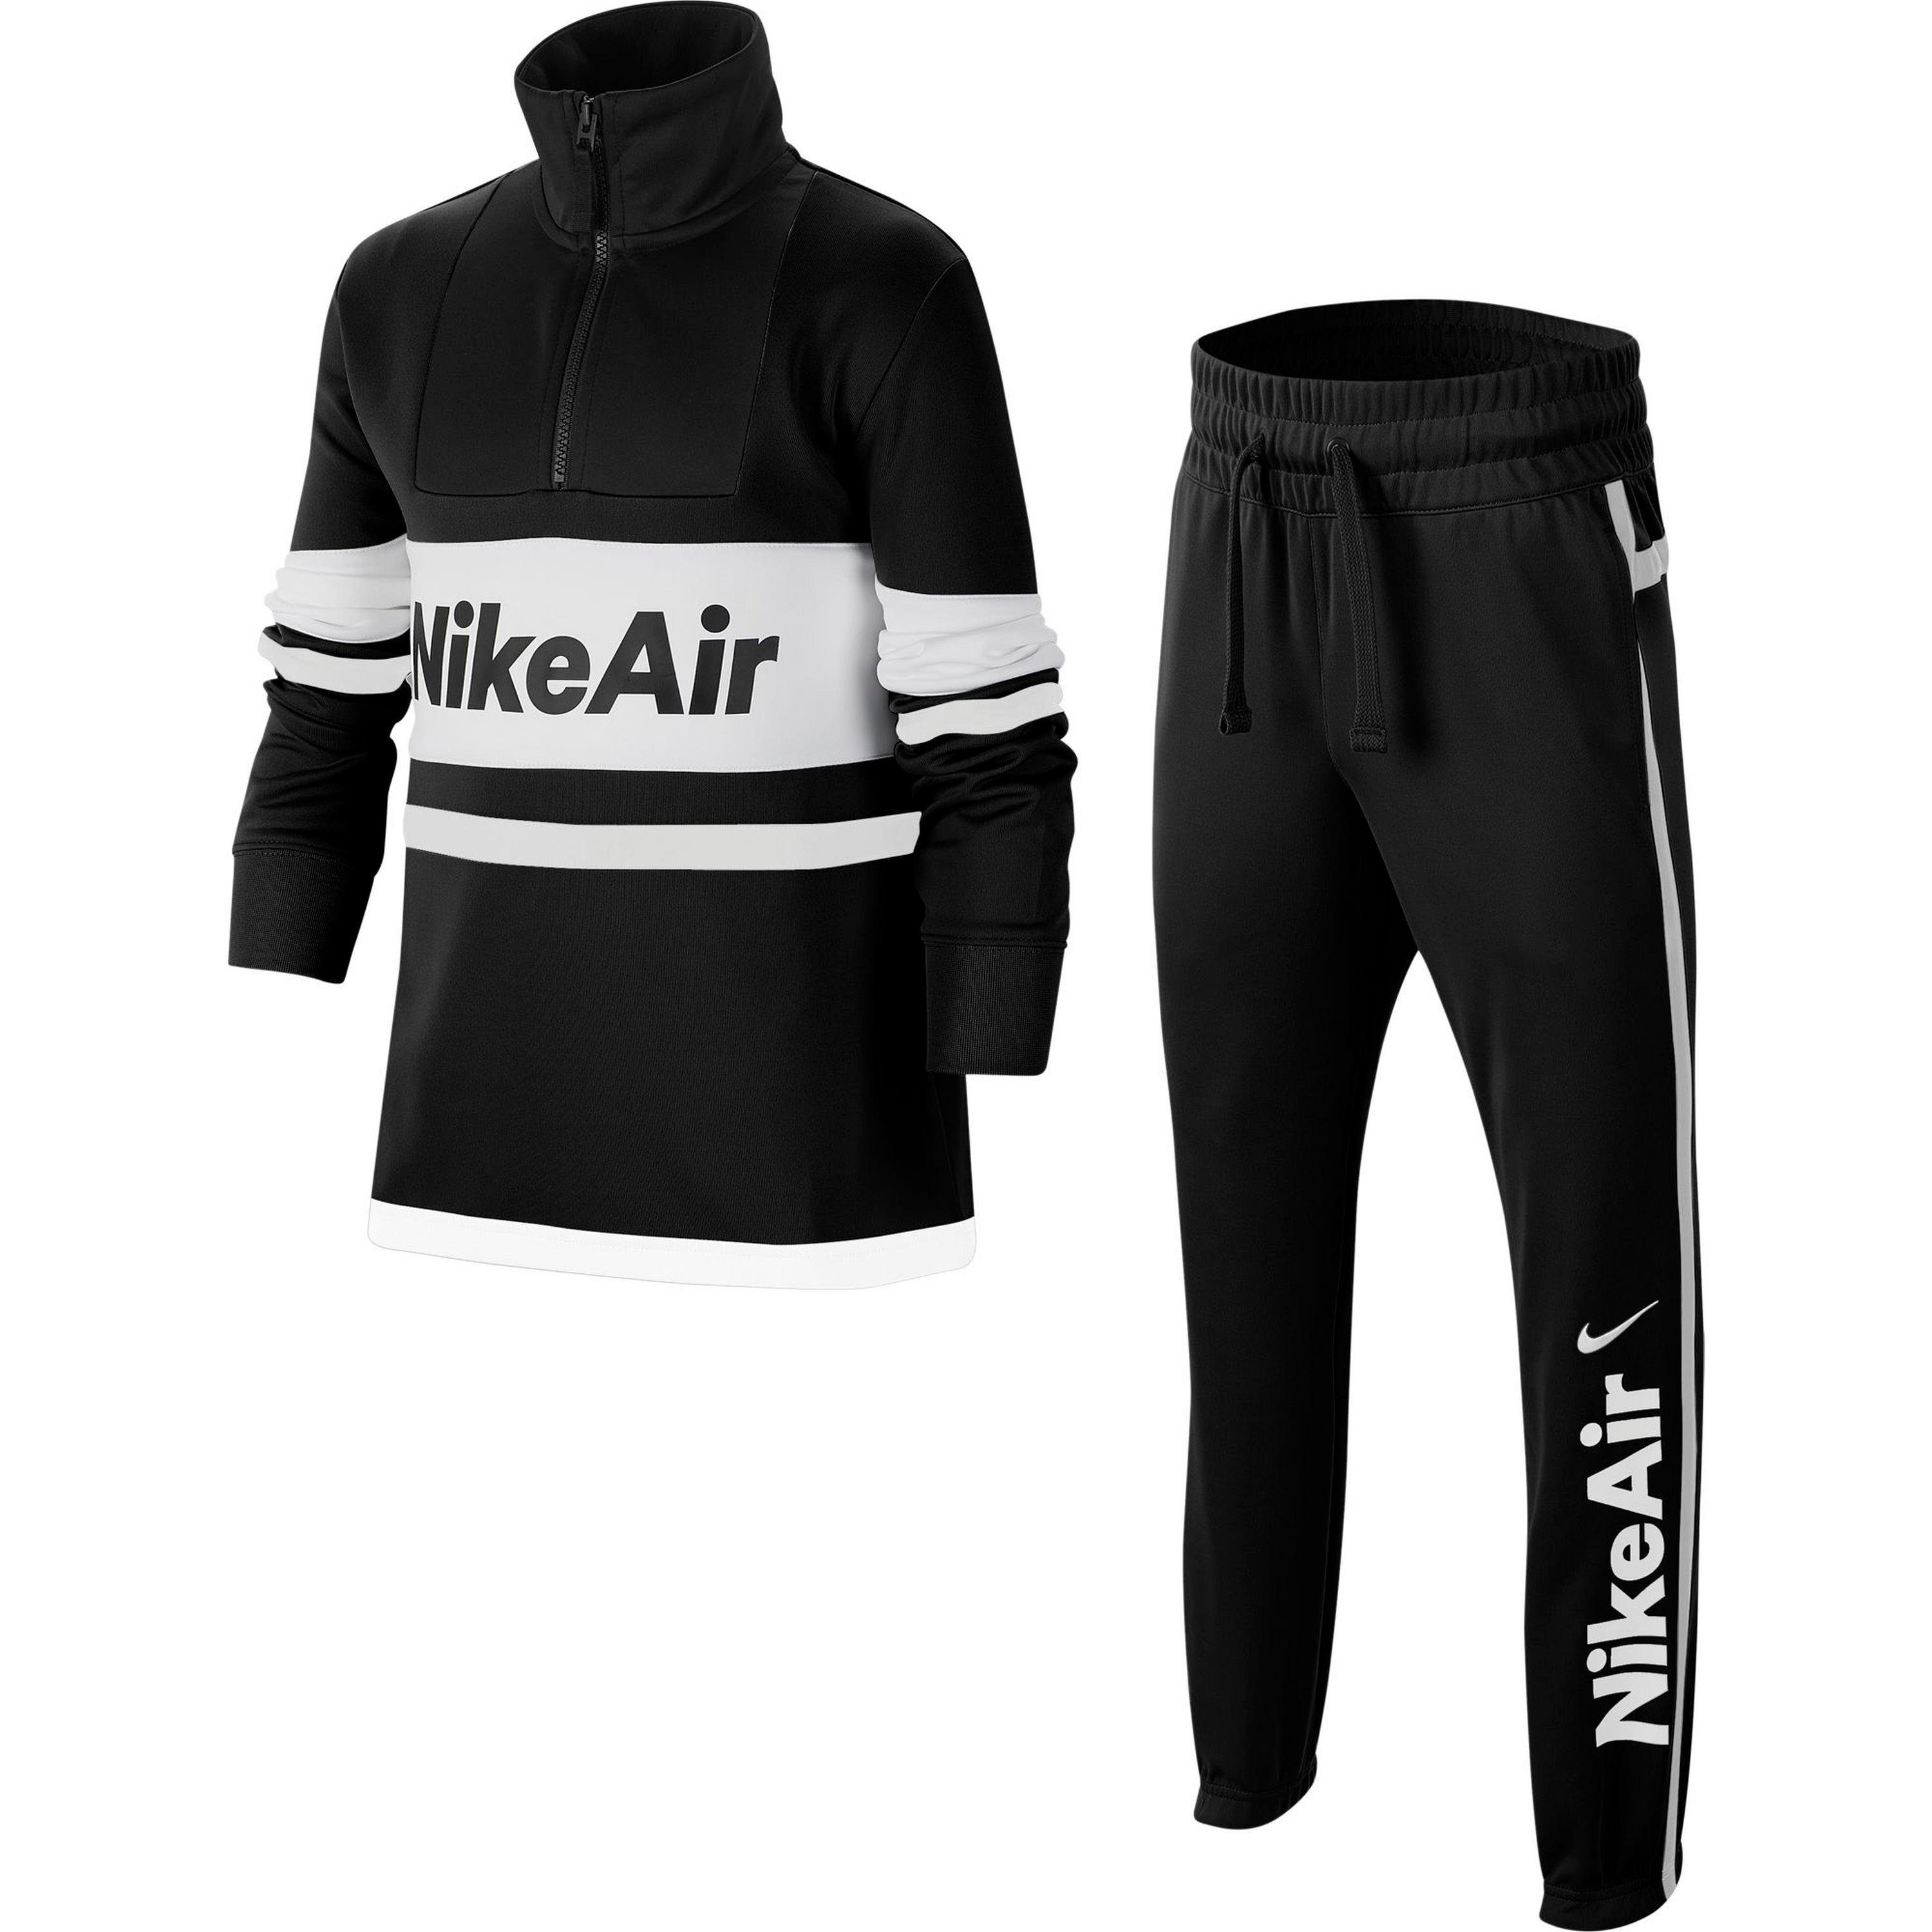 Nike Sportswear Trainingsanzug »Air«, 2-teilig online kaufen | OTTO